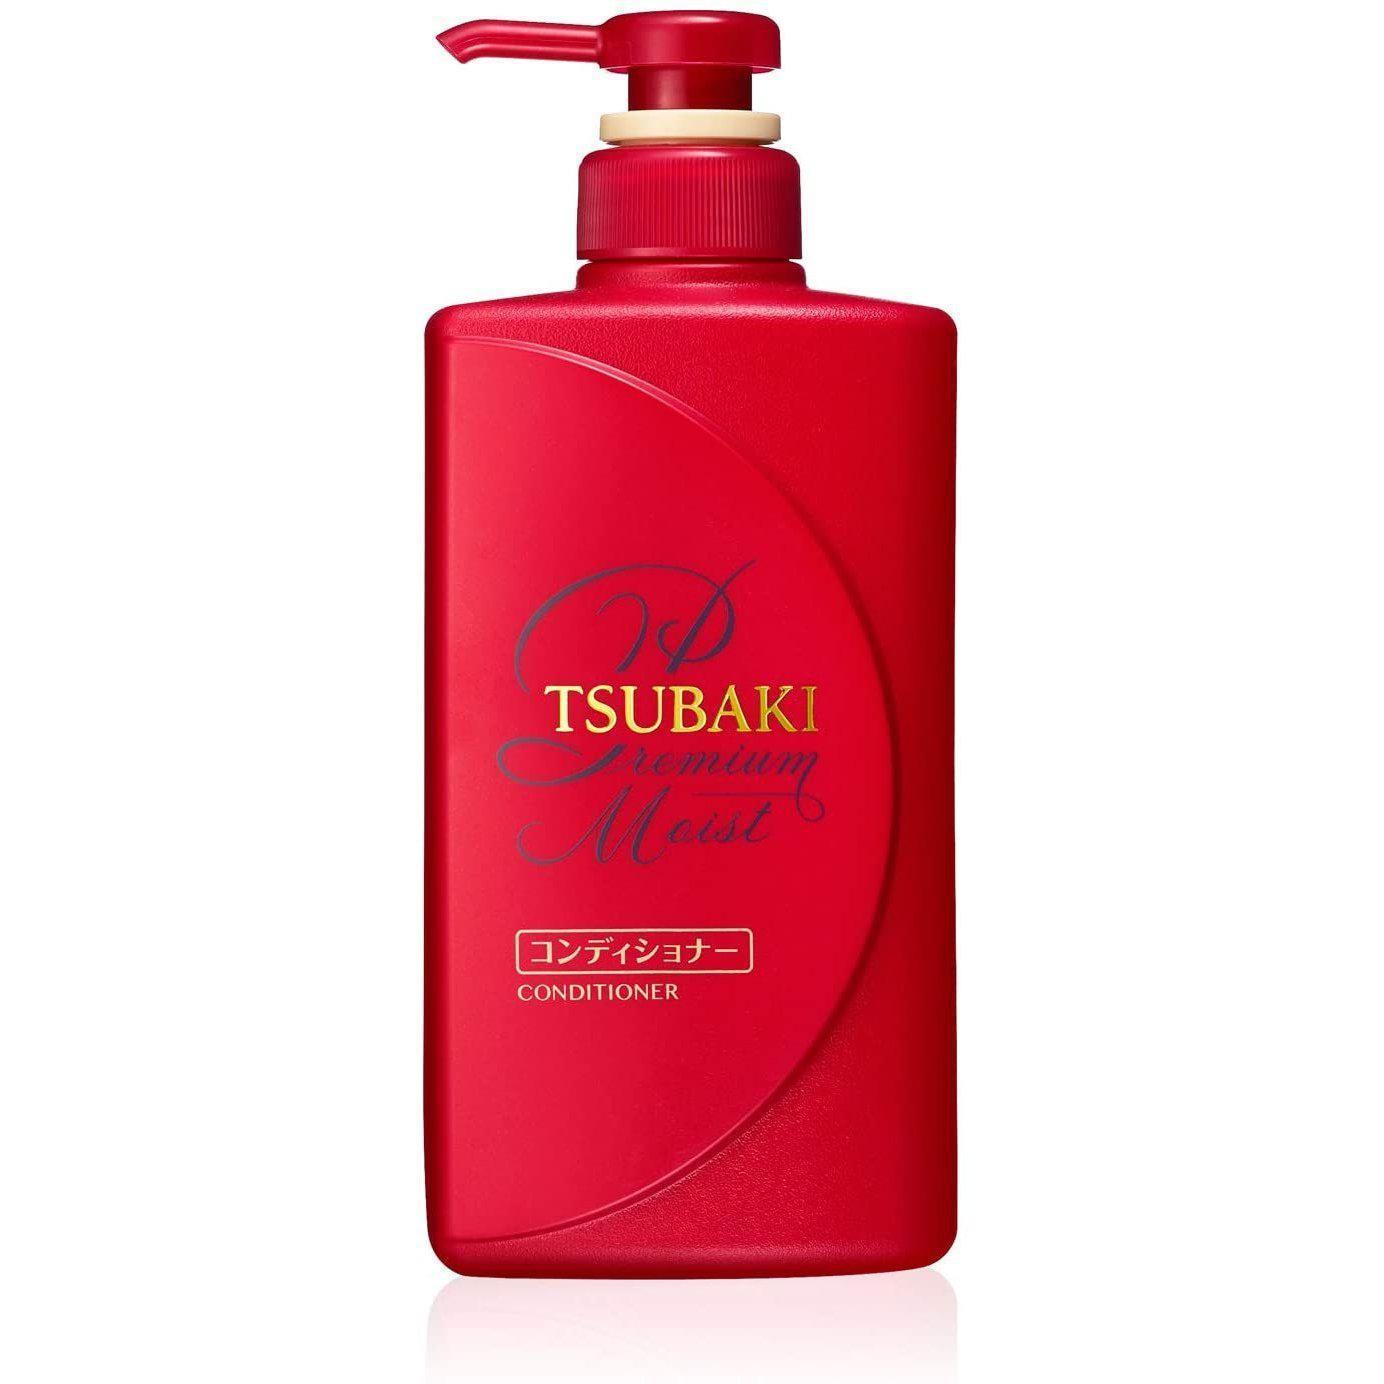 Tsubaki Premium Moist Conditioner 490ml - Calia Australia Pty Ltd